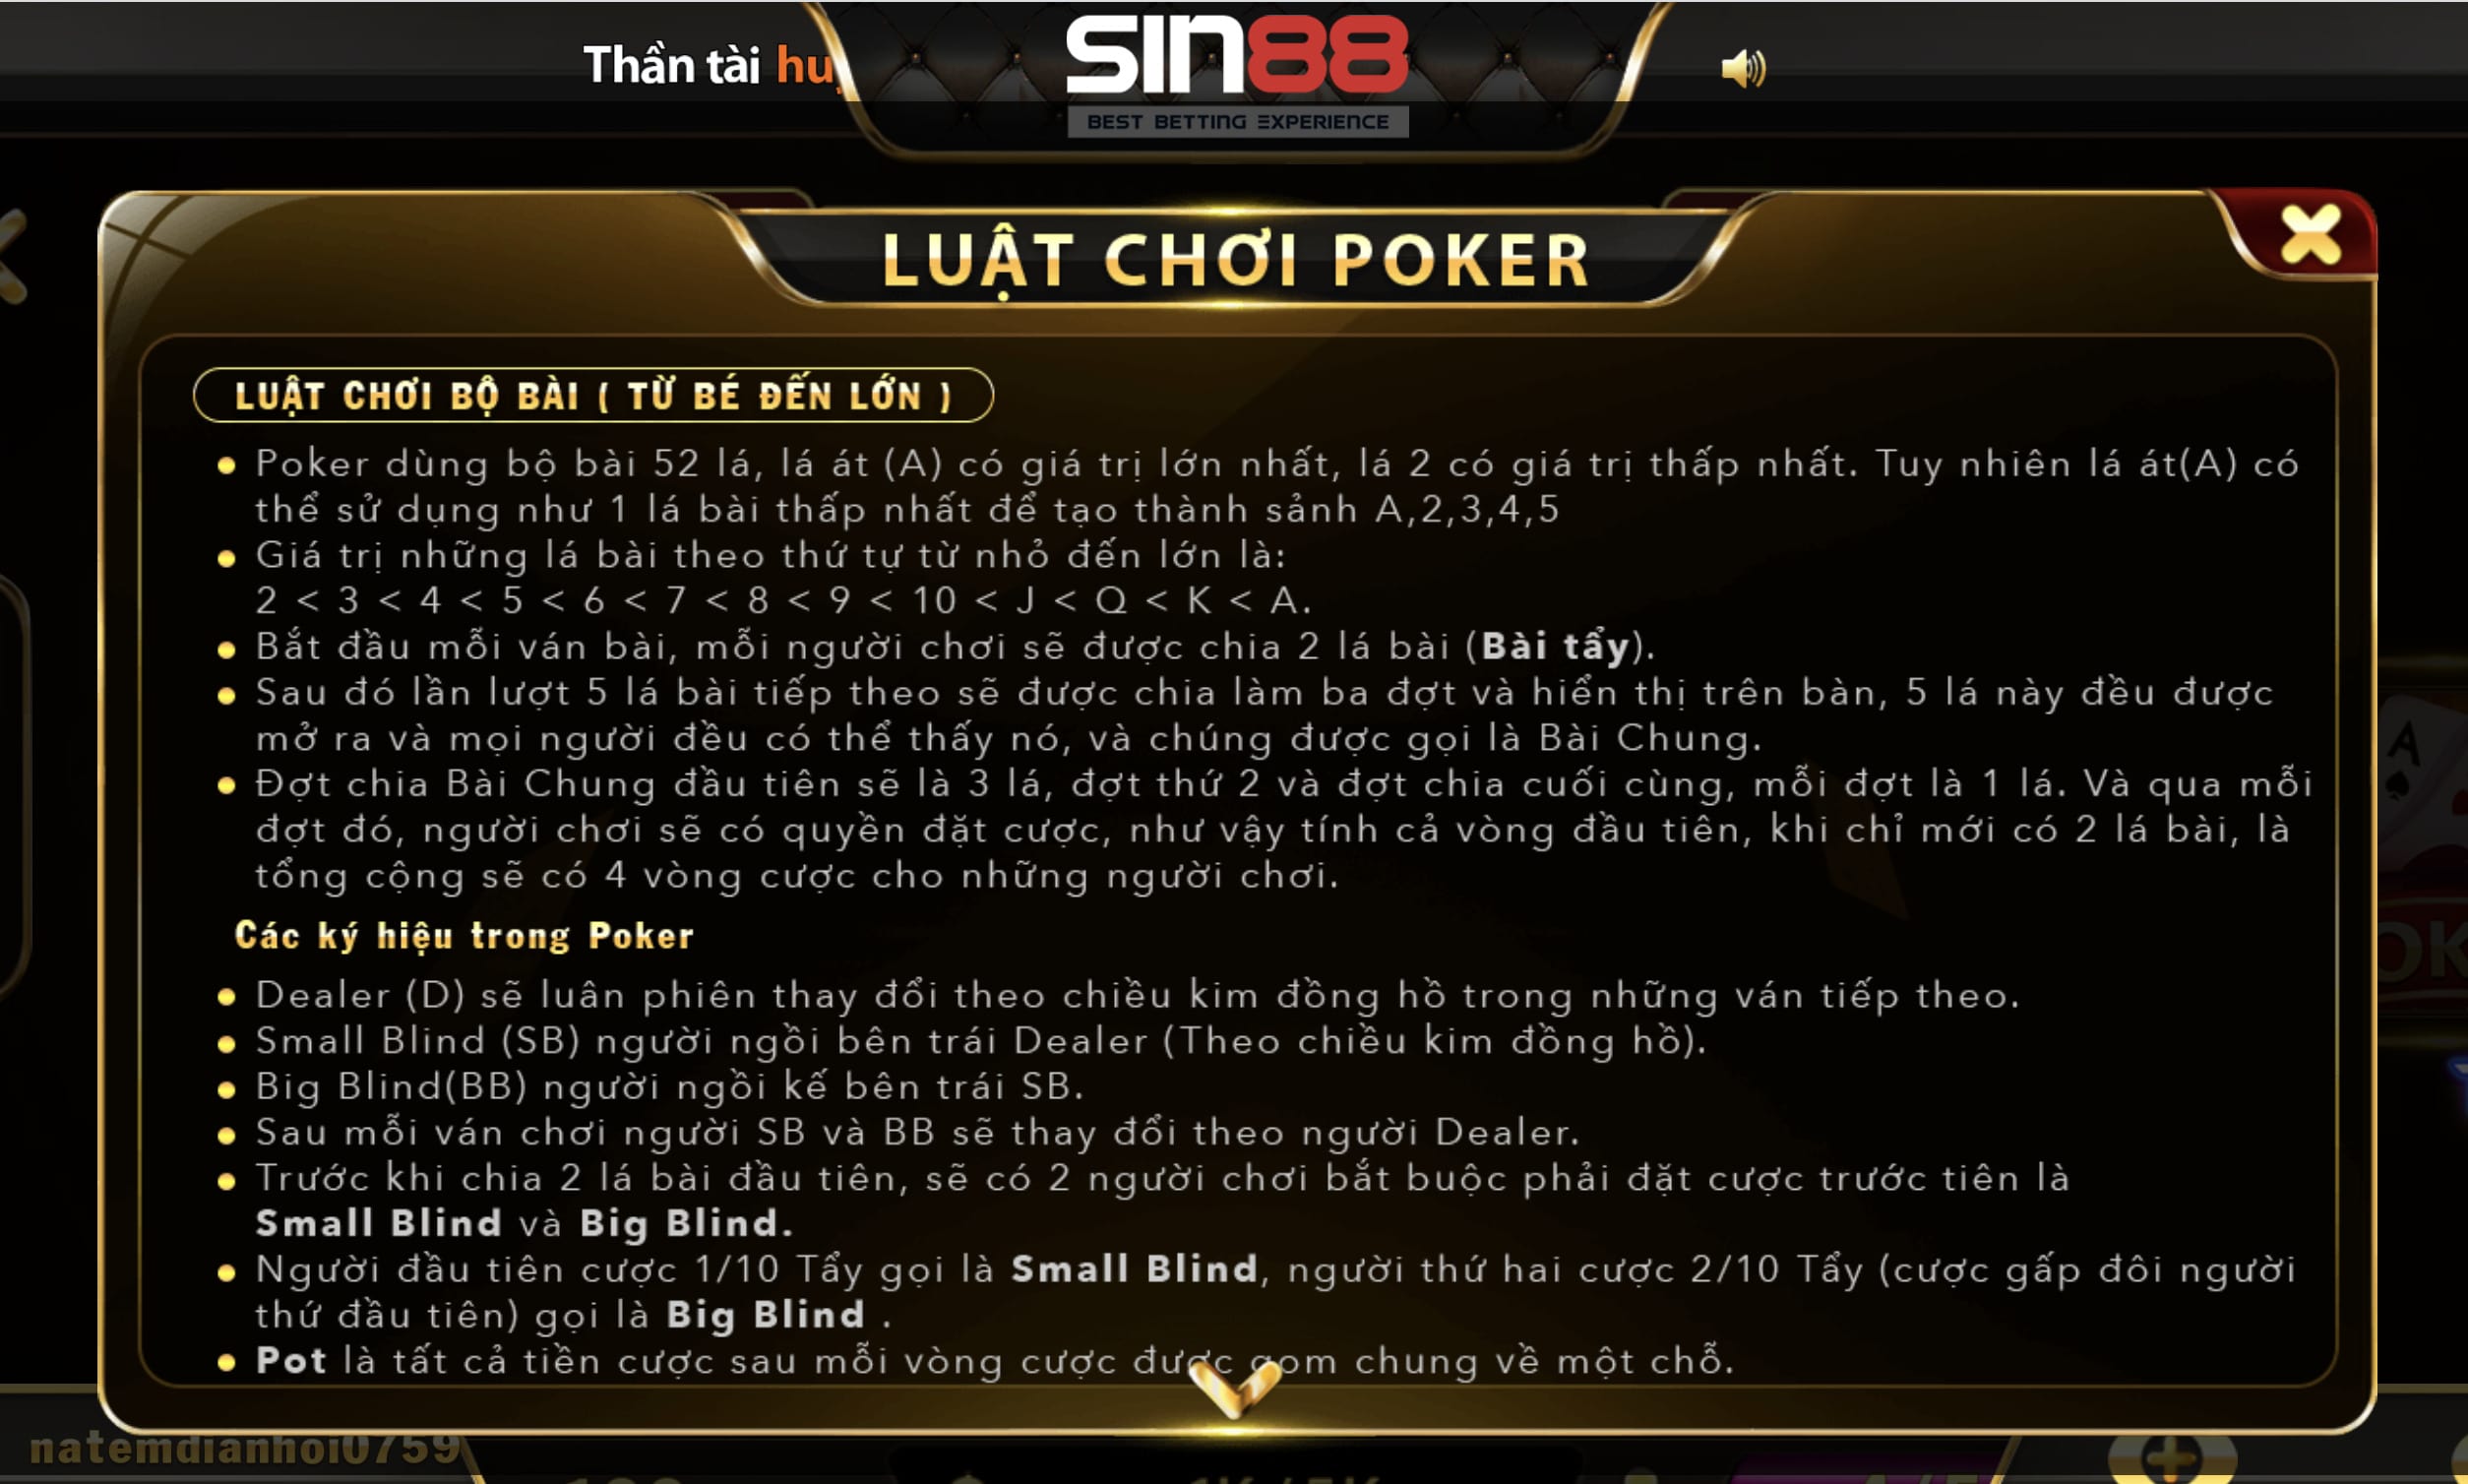 Luật chơi cách chơi game bài Poker tại nhà cái Sin88